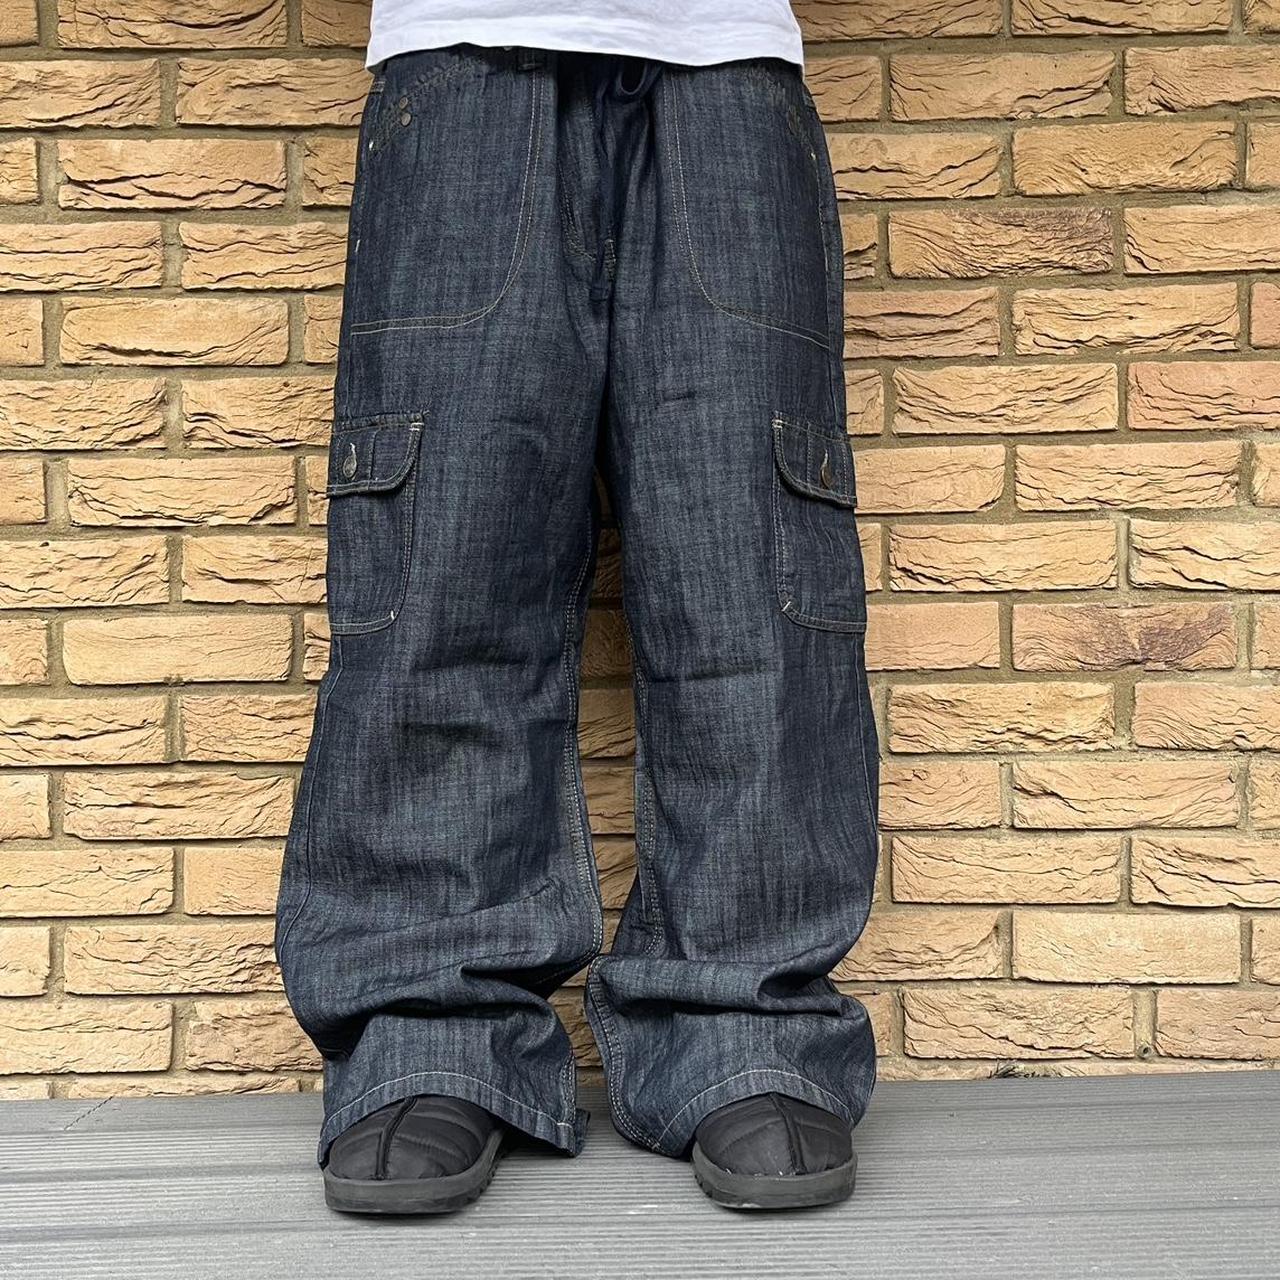 Baggy Vintage Jeans 2000s Skater Pants W38... - Depop